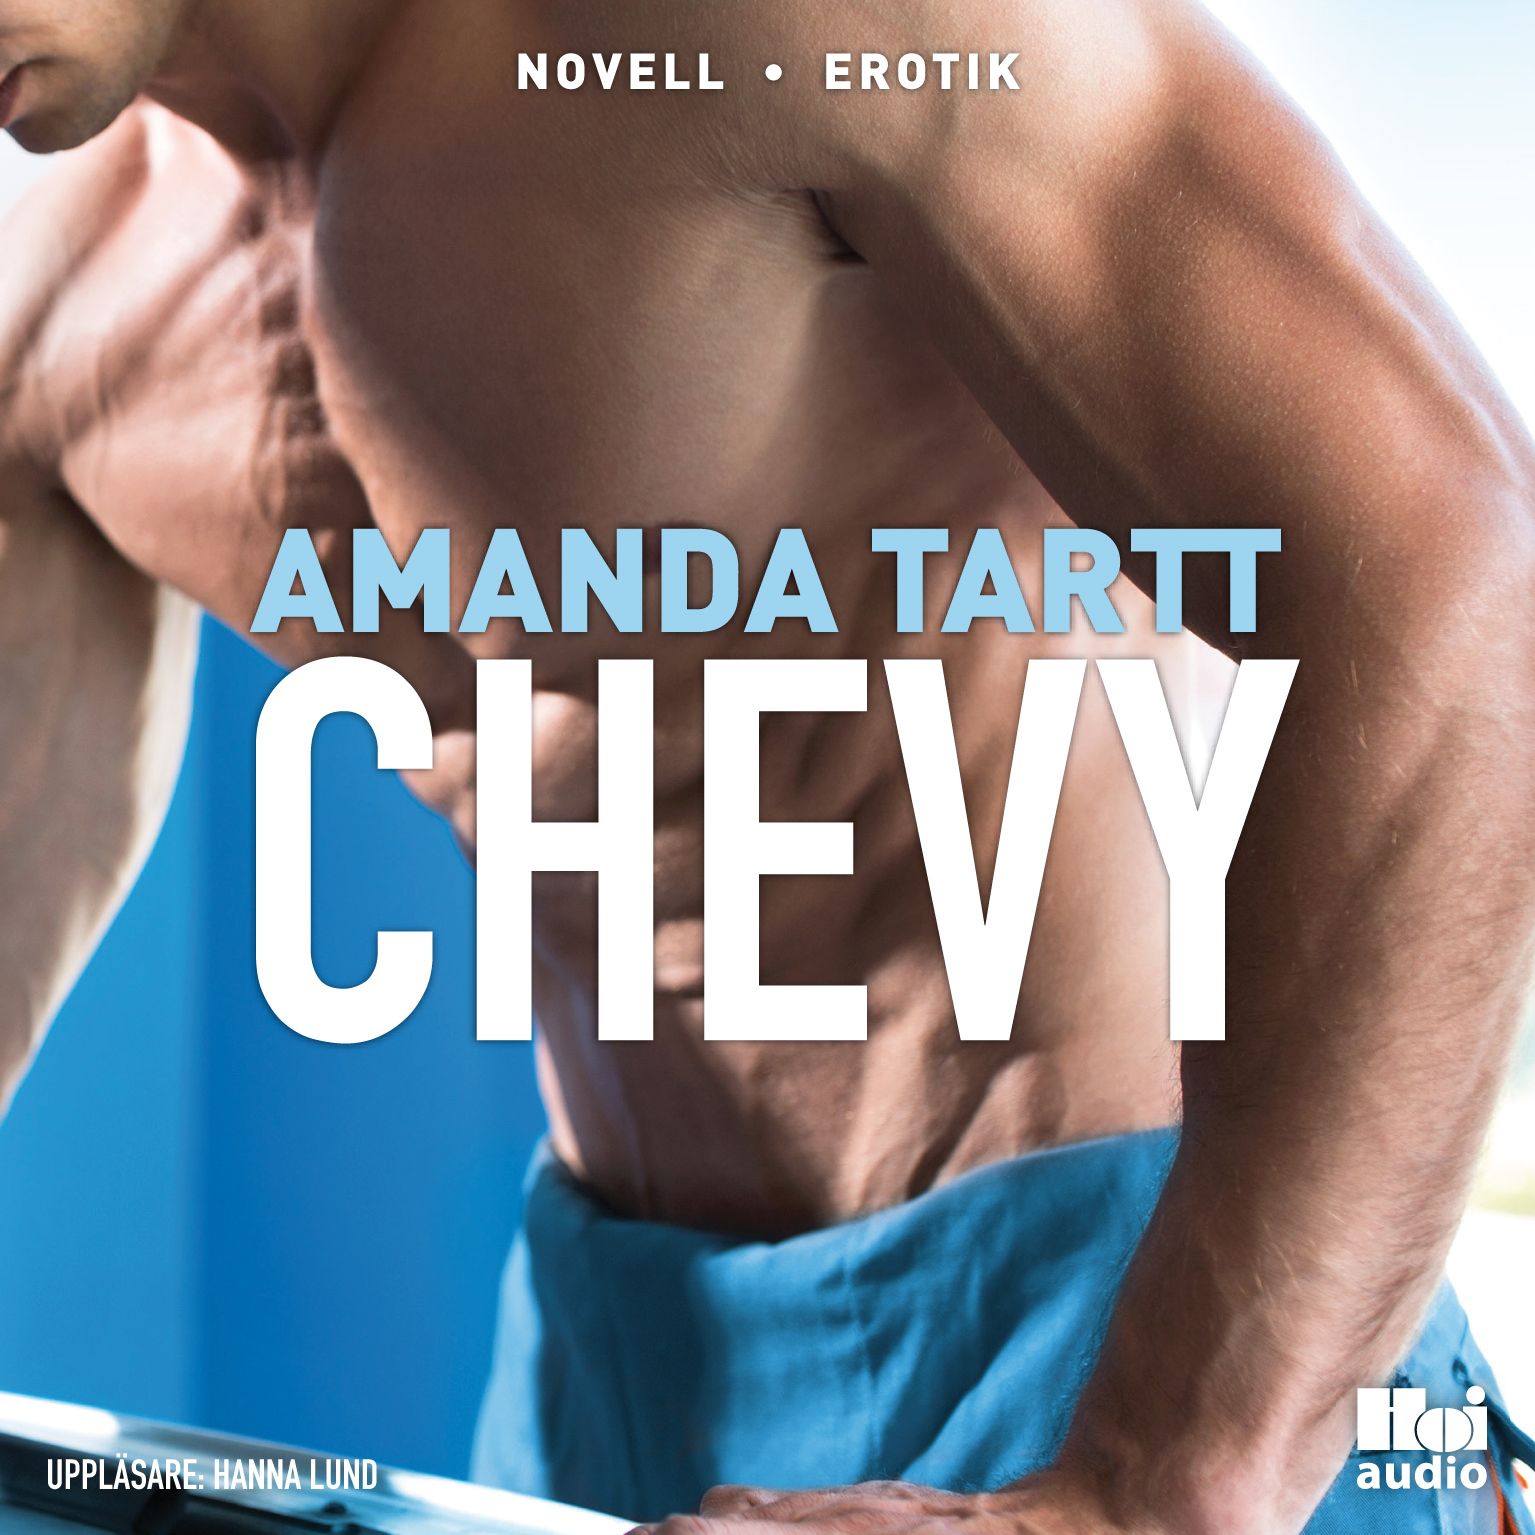 Chevy, ljudbok av Amanda Tartt